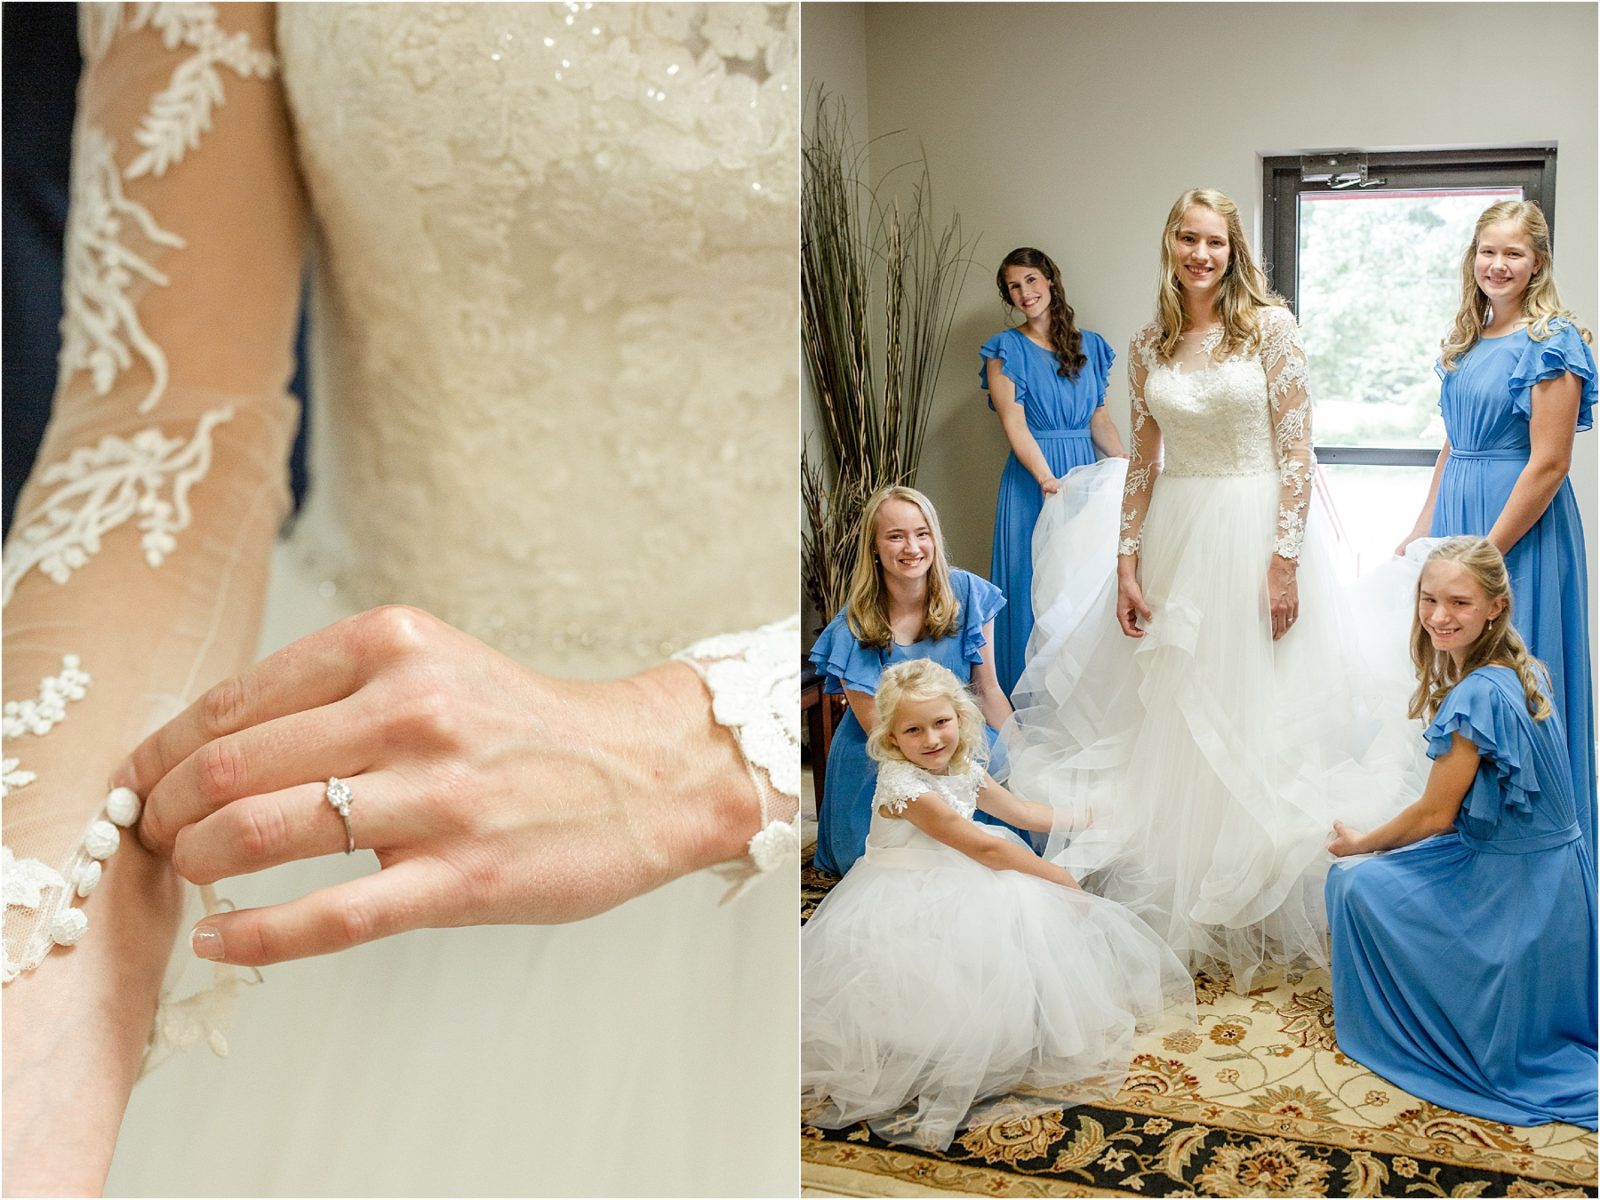 GA bride fluffing wedding dress